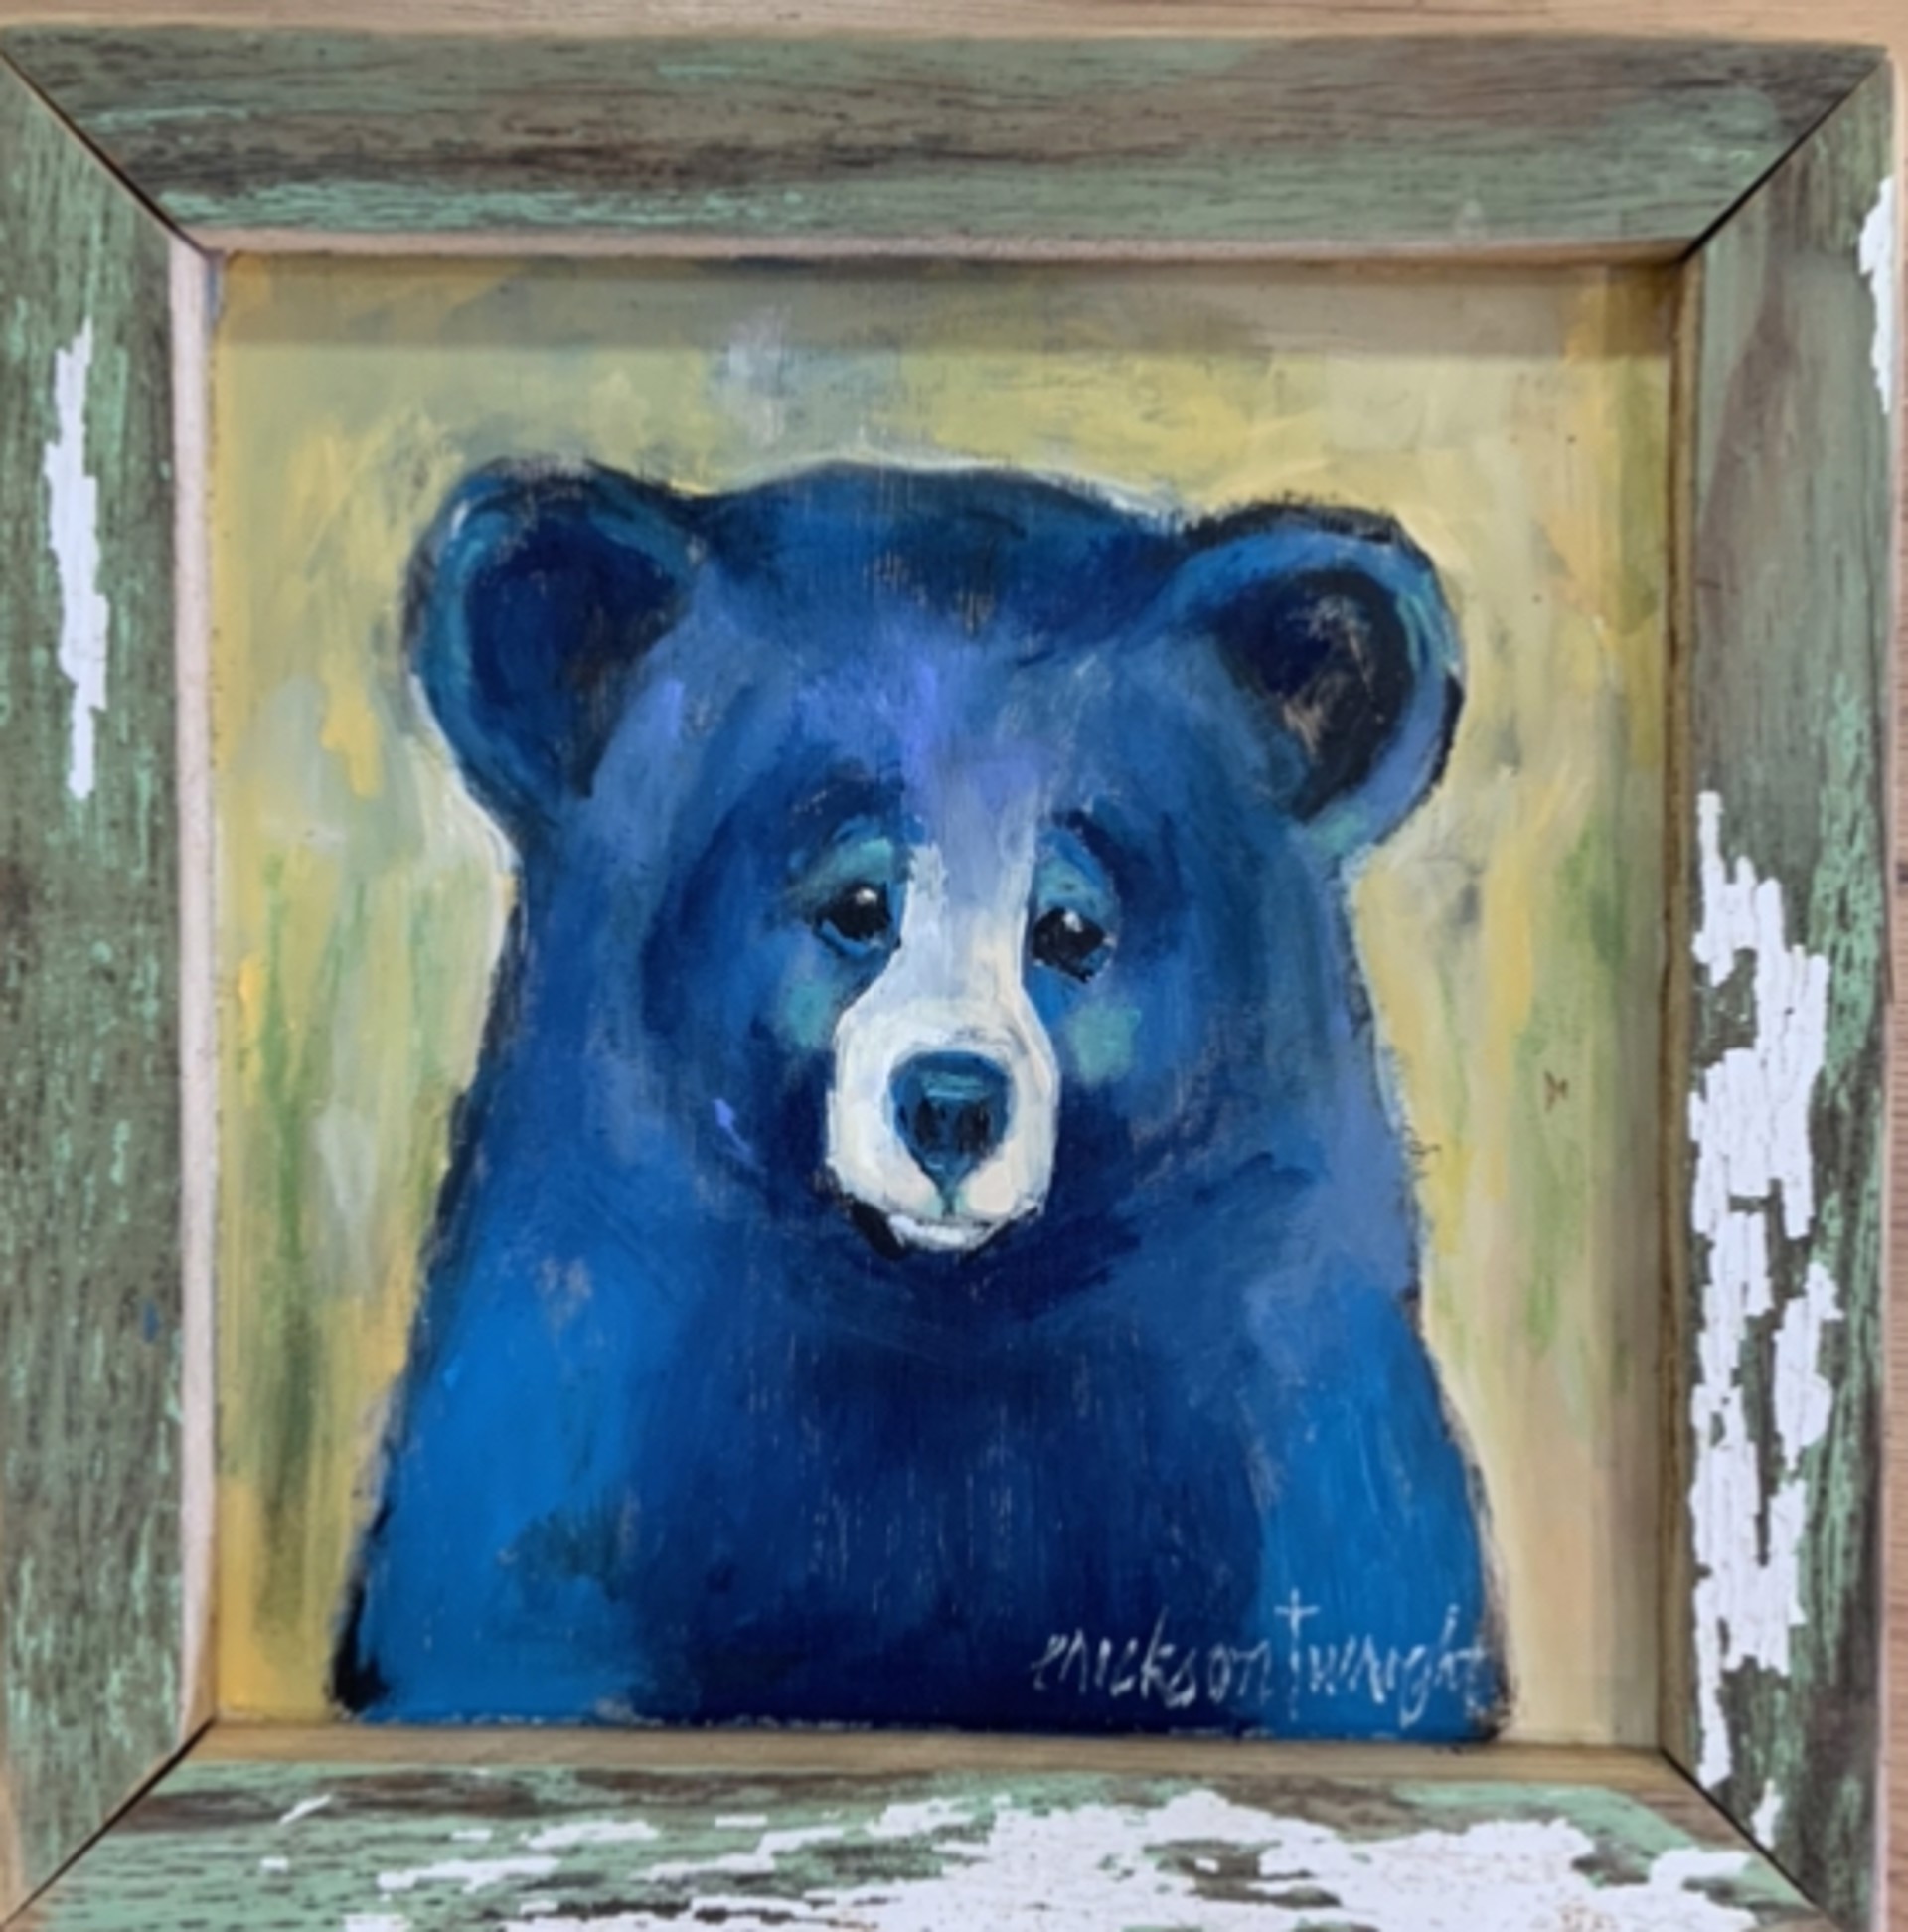 Bear Naked by Sandra Erickson Wright